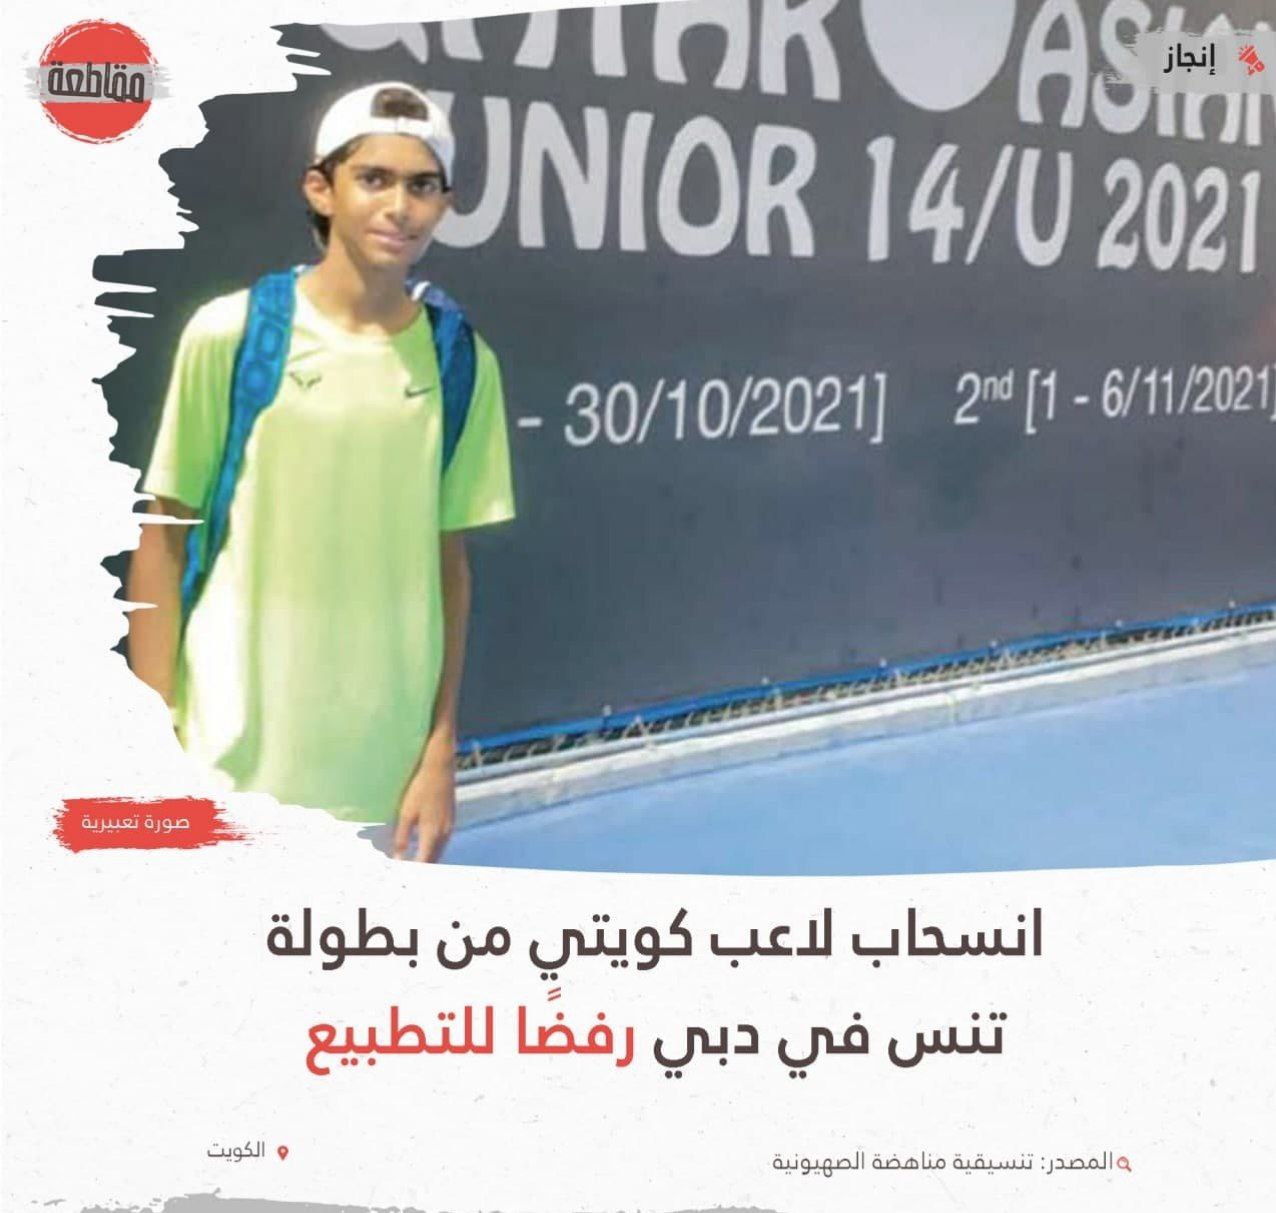 تنیسور کویتی از بازی با حریف اسرائیلی انصراف داد